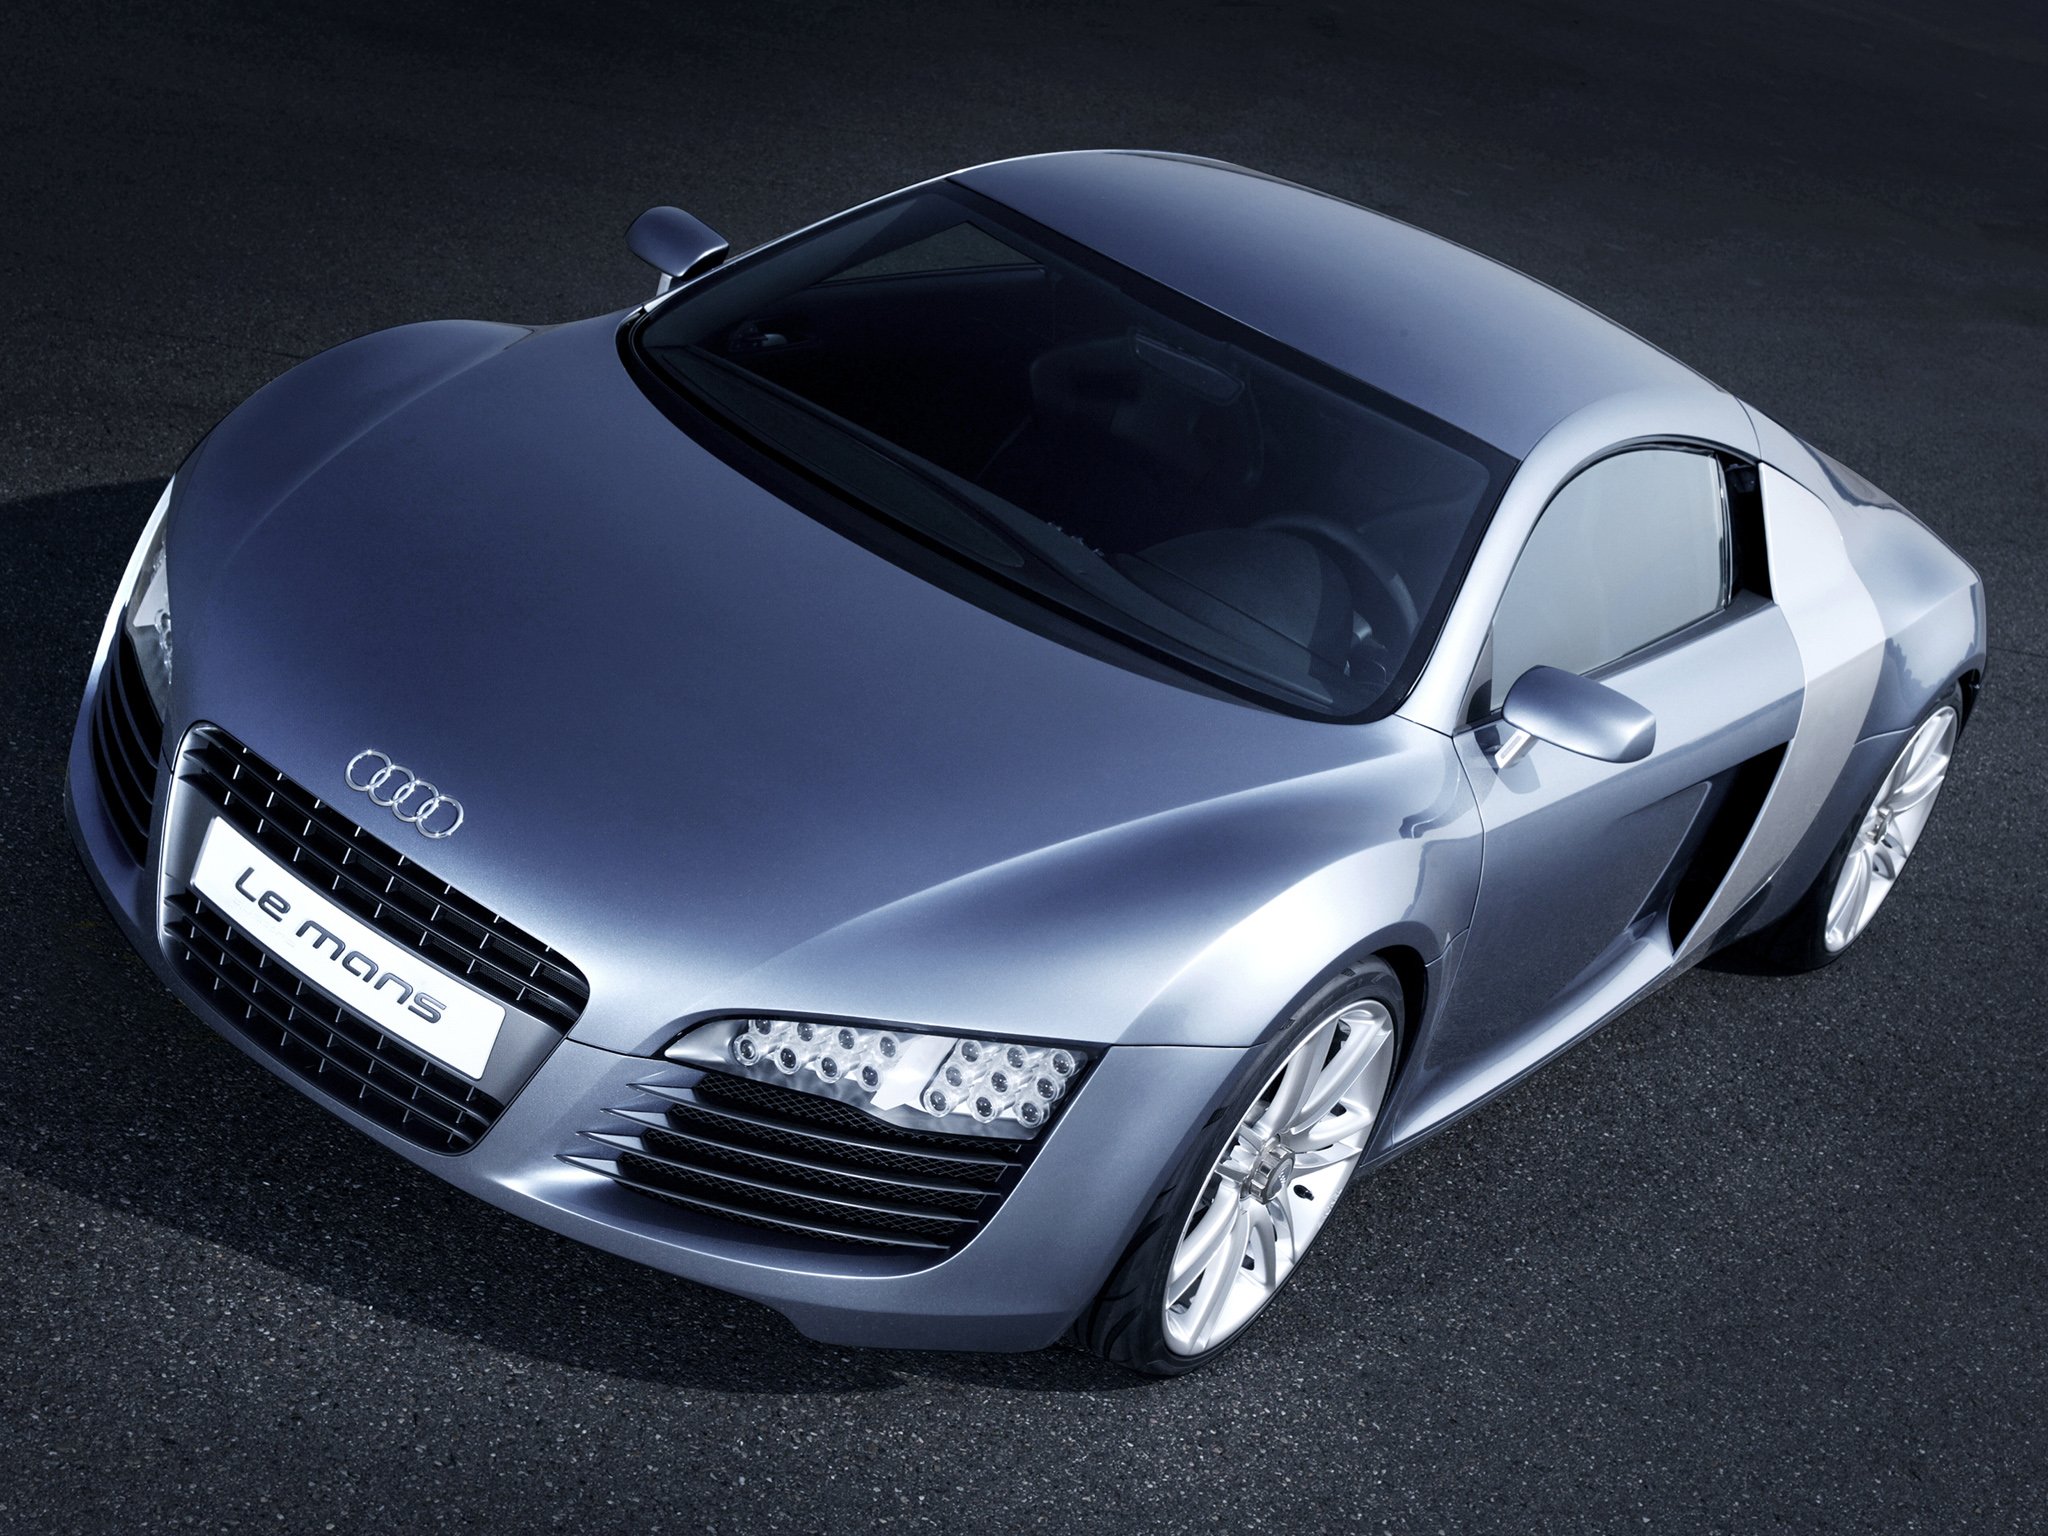 Audi, Le mans, Quattro, Concept, Lemans, Supercar Wallpaper HD / Desktop and Mobile Background